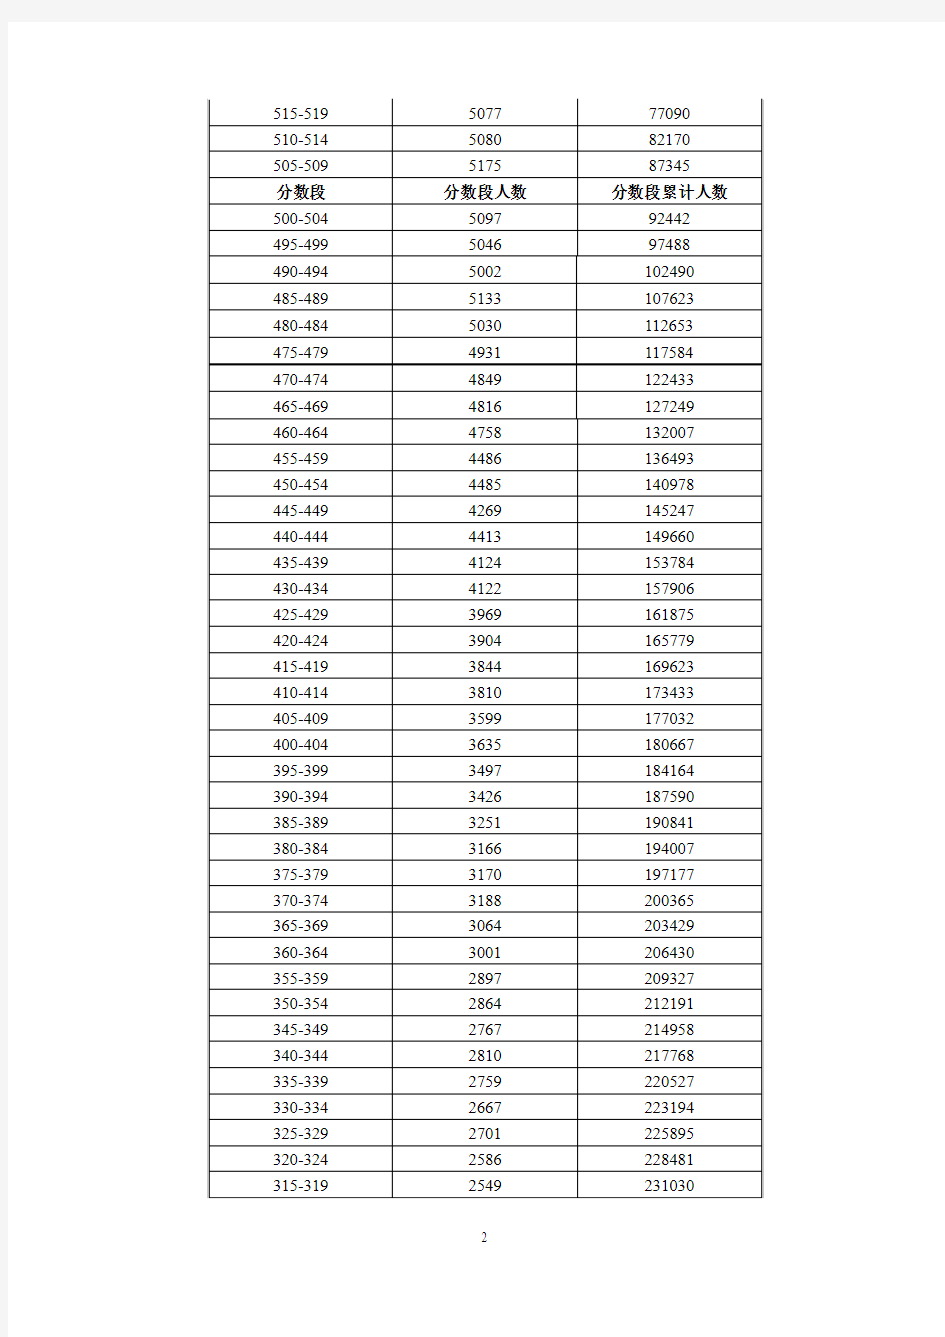 2013年广东省普通高考各类分数段统计表